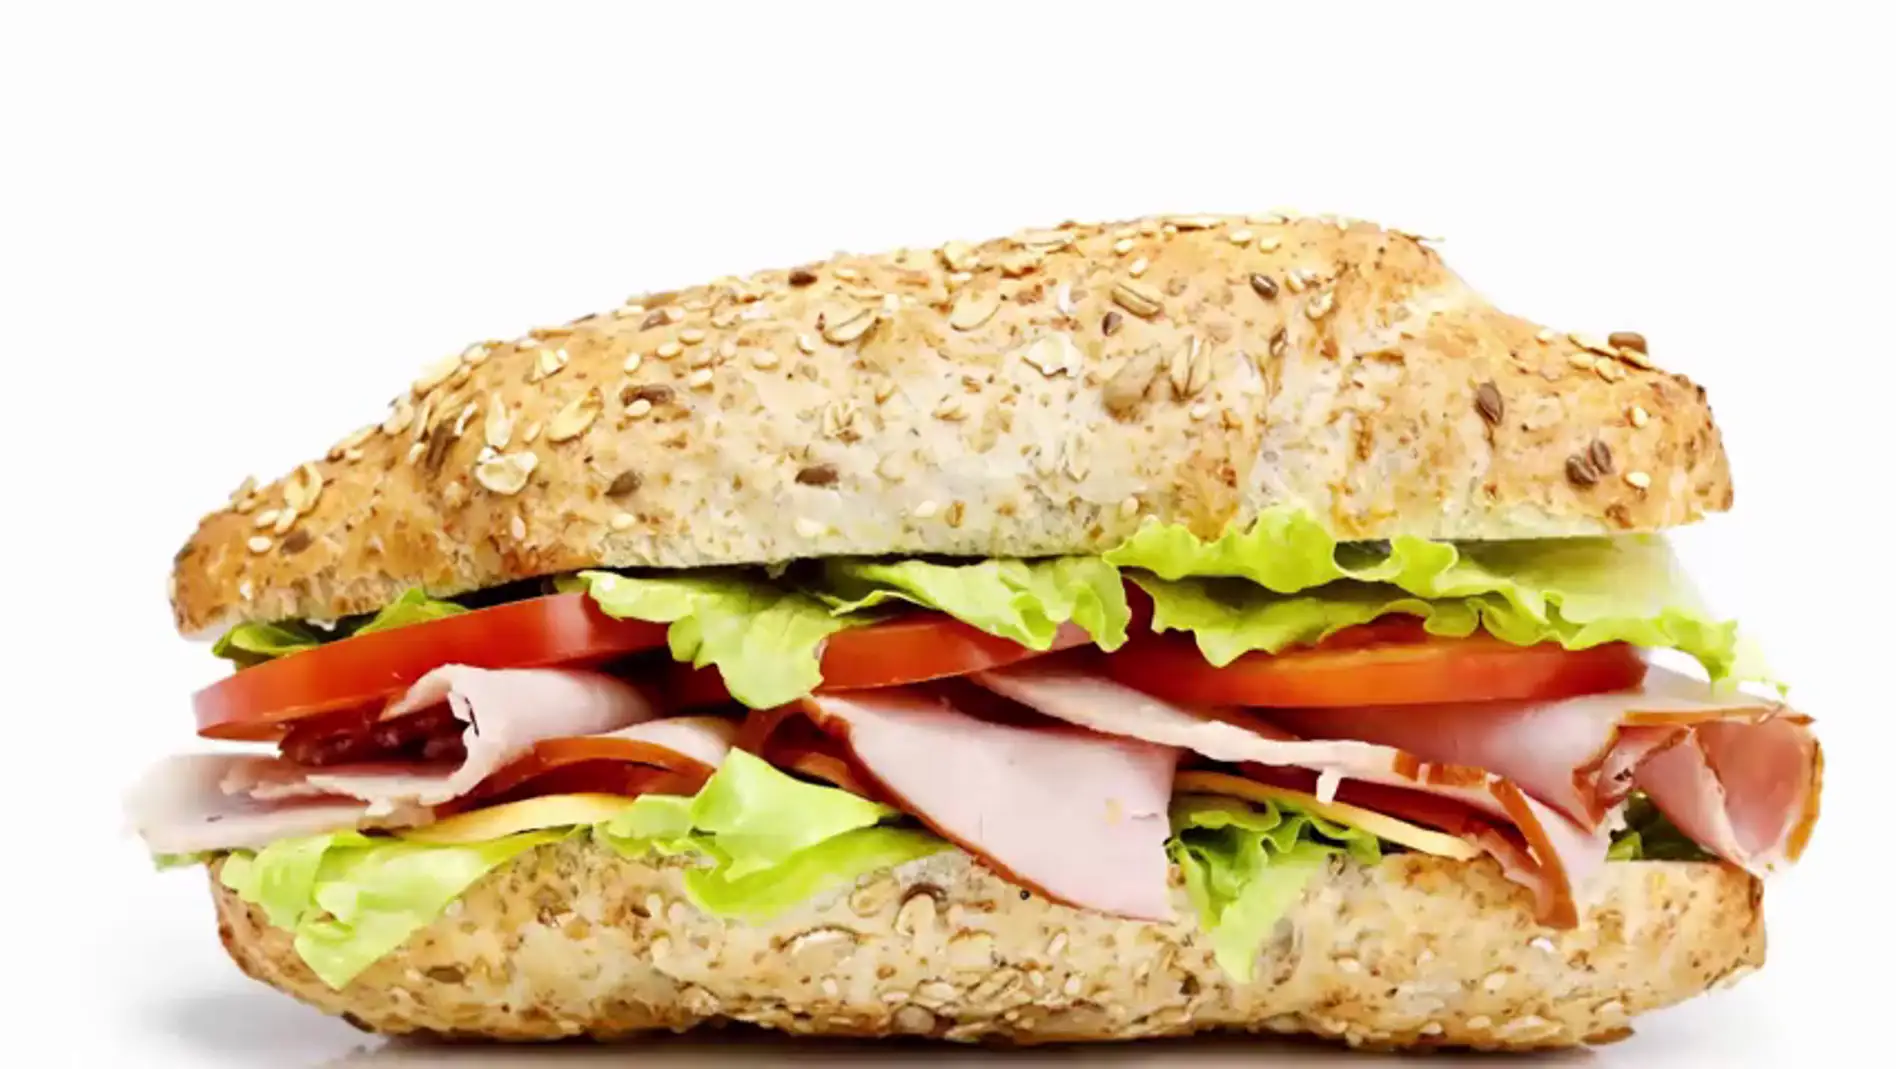 Los sándwiches contaminan igual que los coches según un estudio